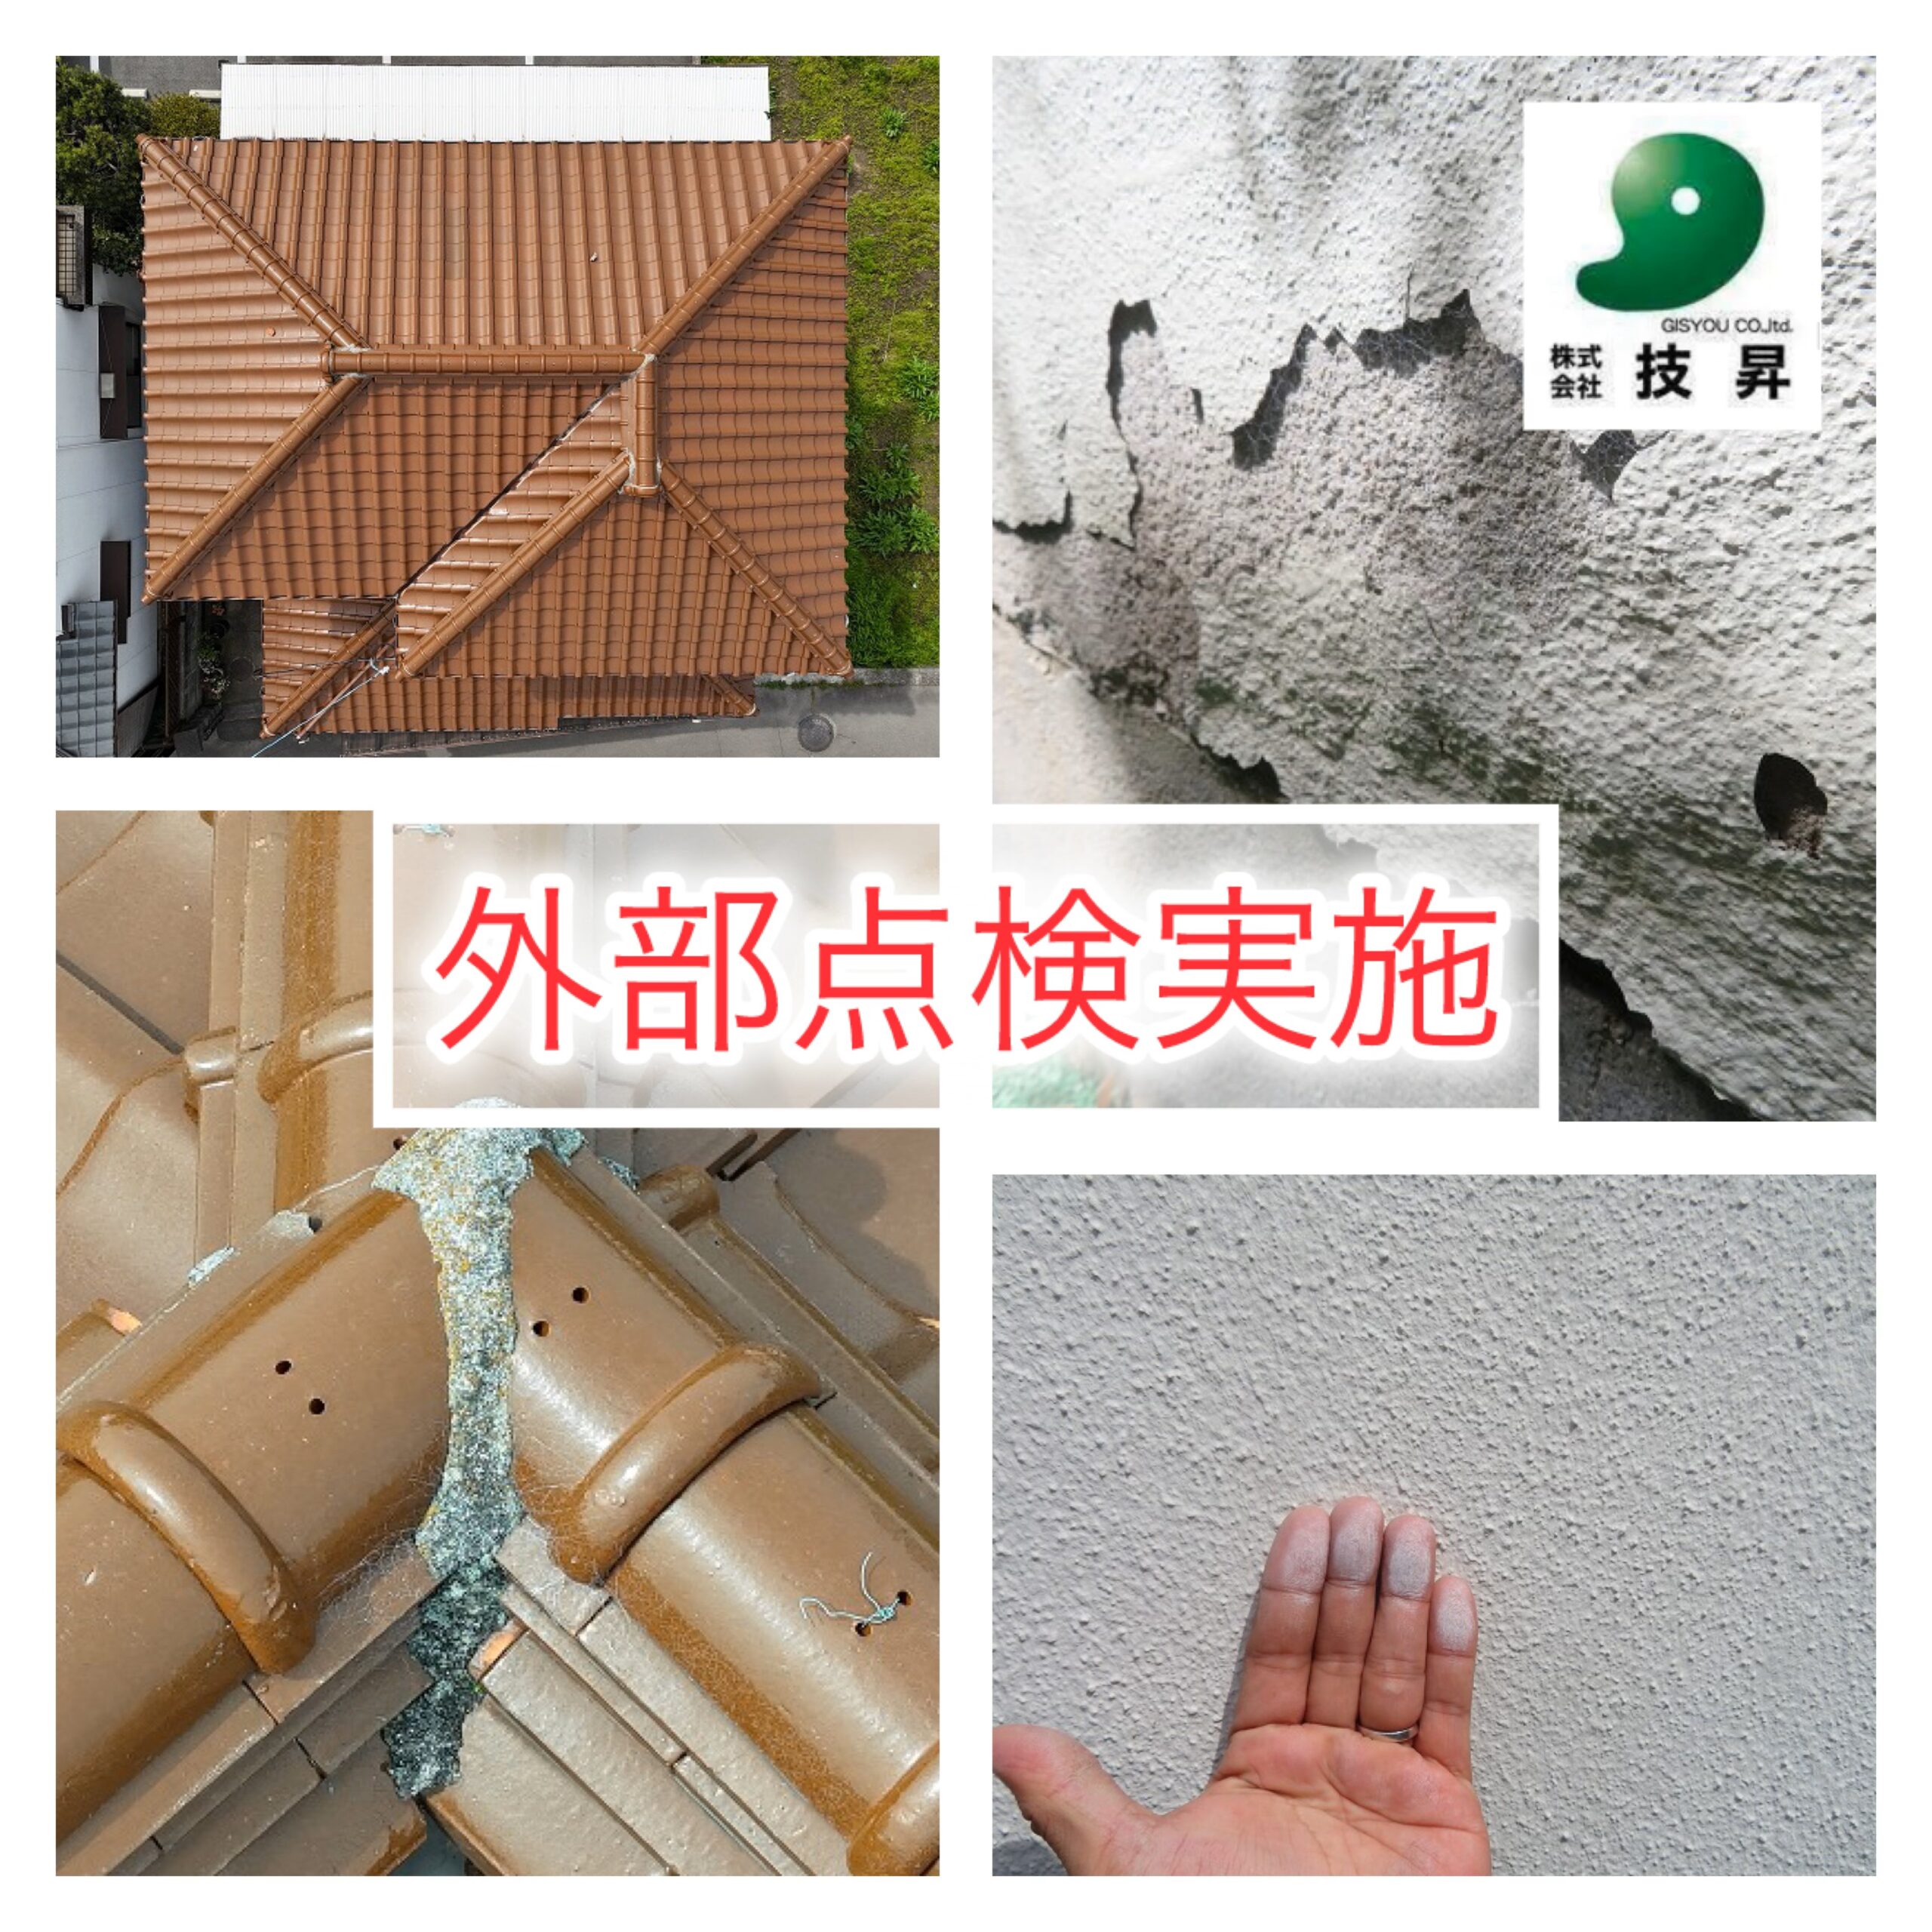 松山市　外部点検実施！ 屋根の漆喰のメンテナンスについて